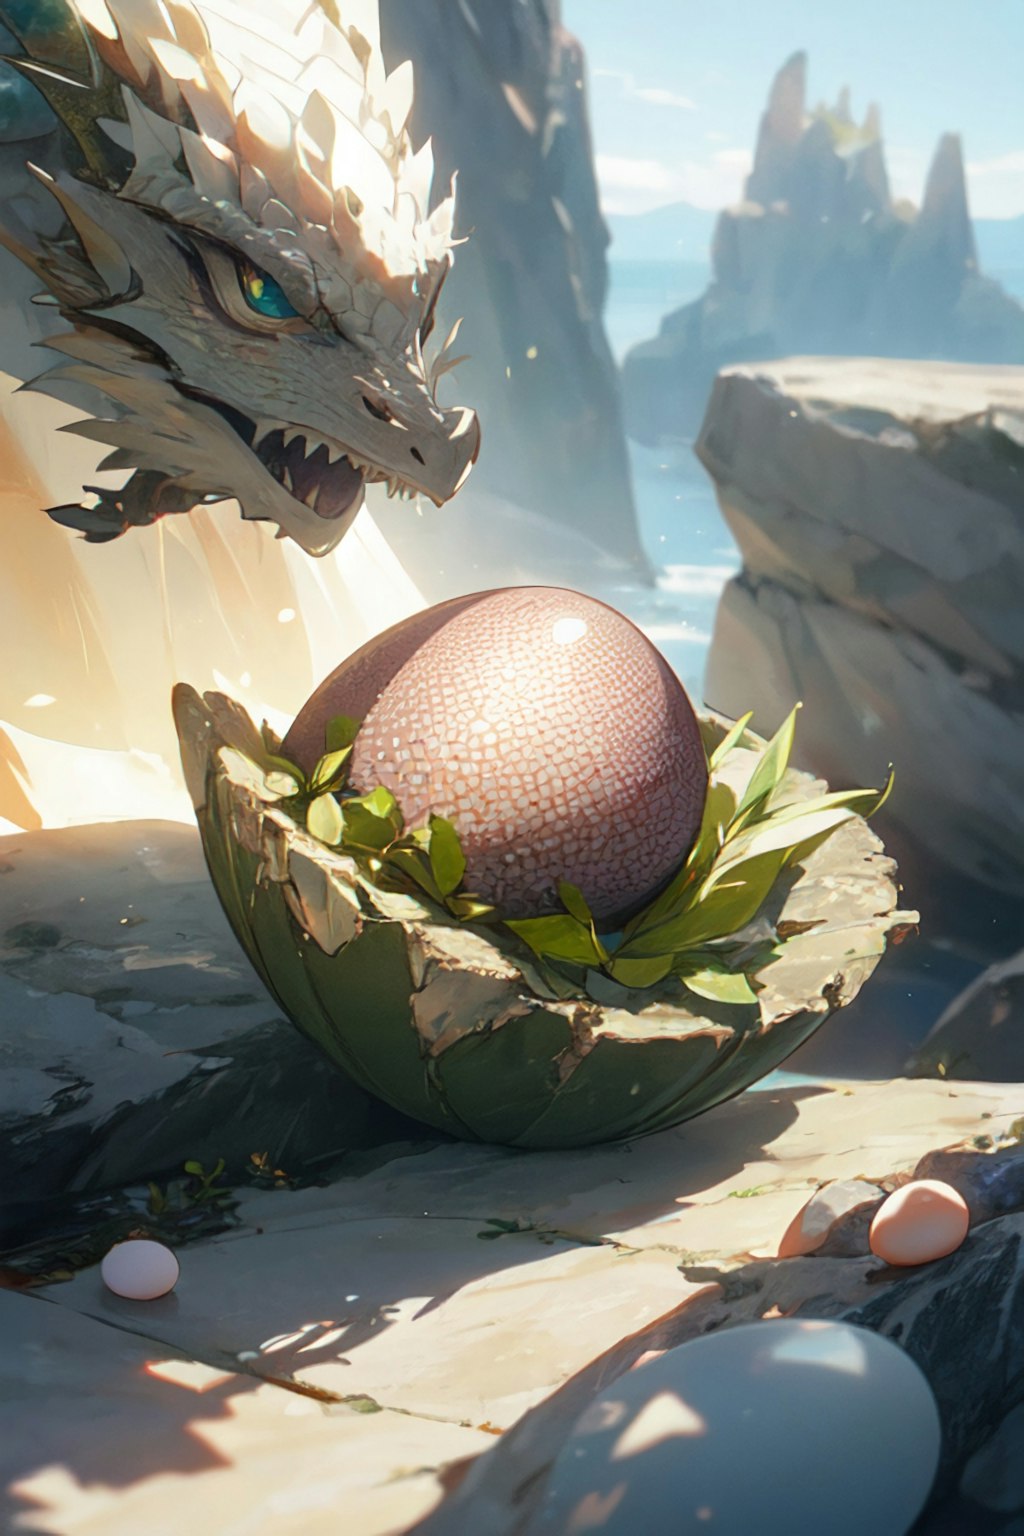 龍の卵、それは誰も見たことがない秘宝